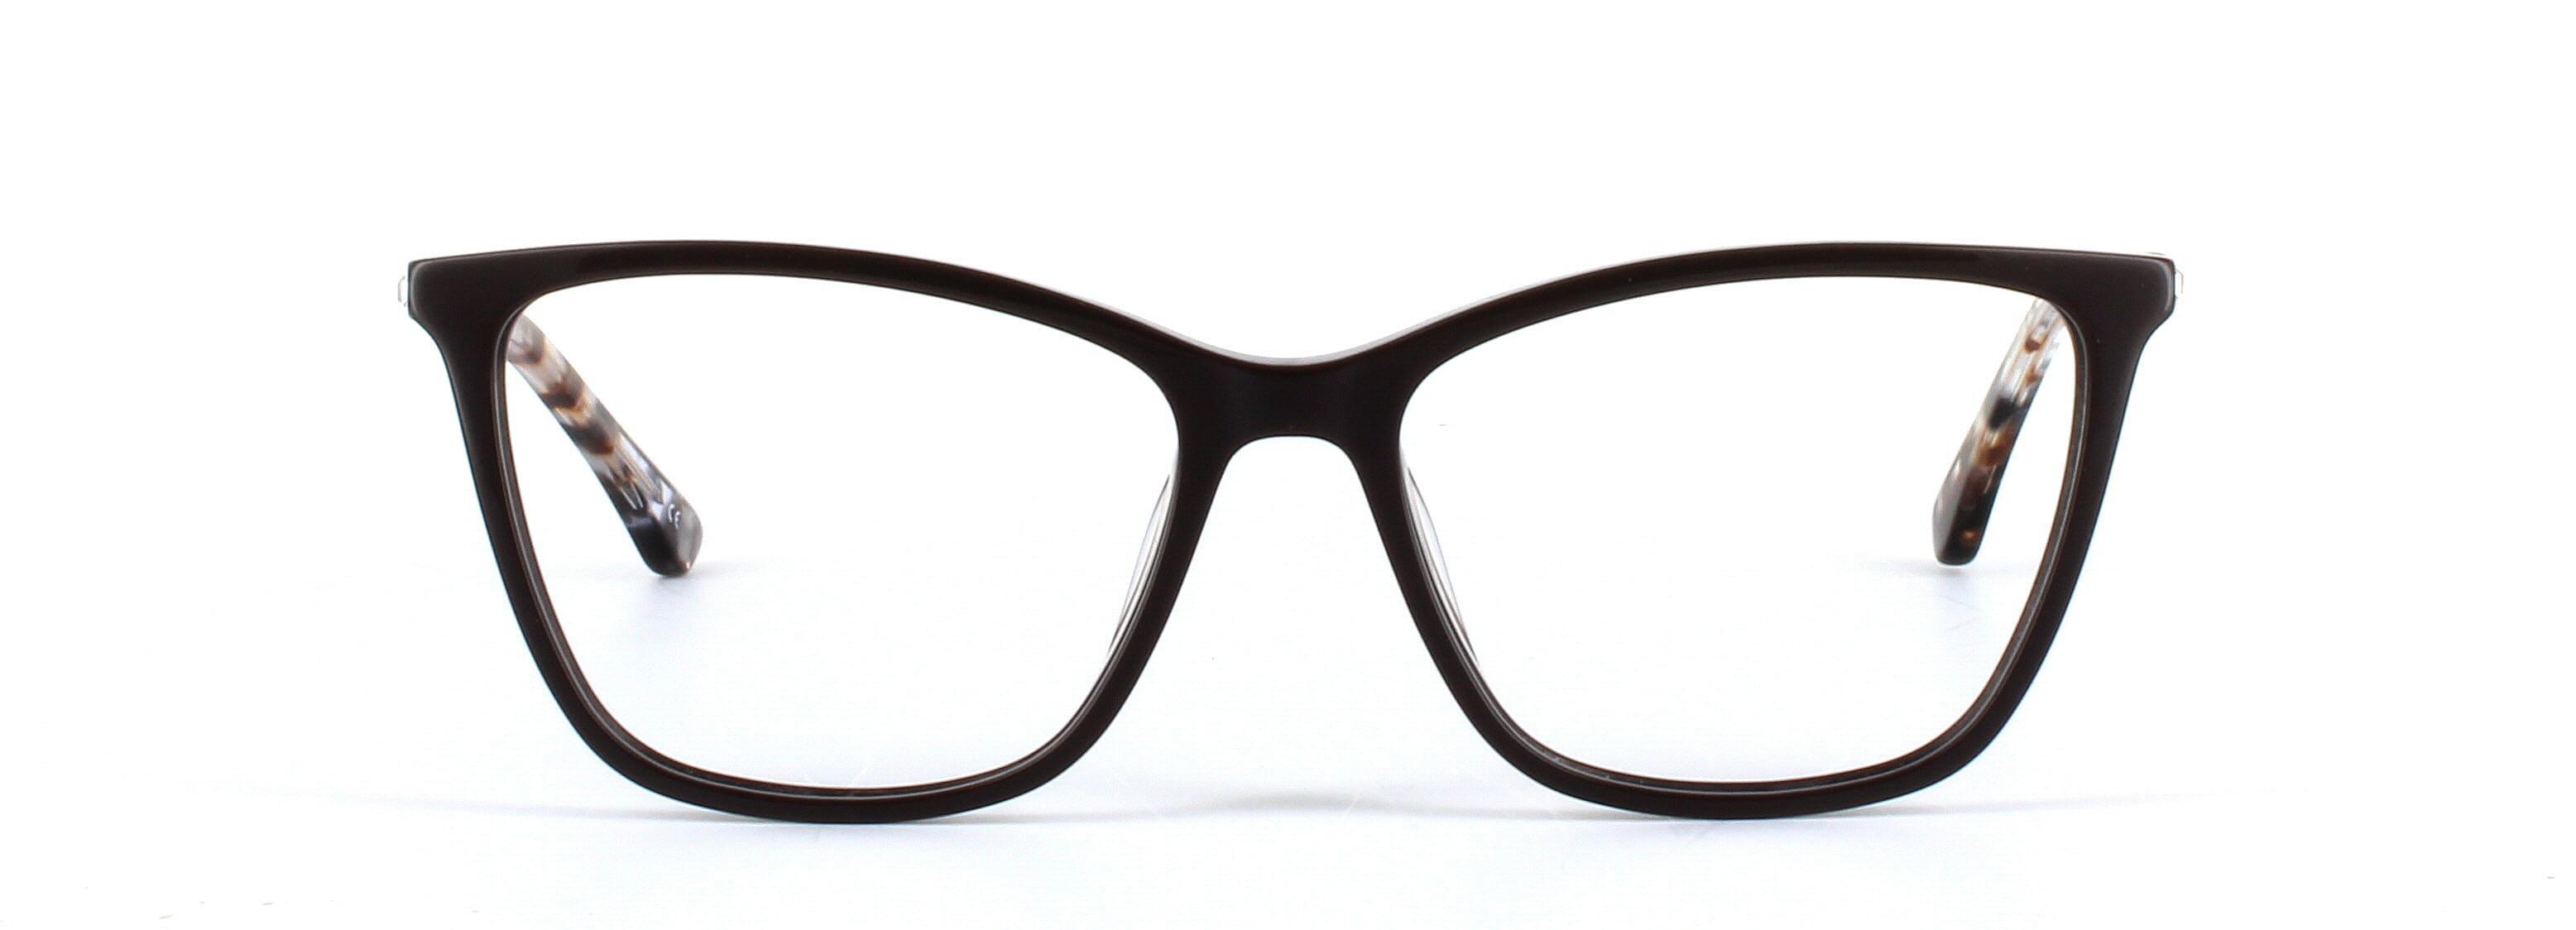 Gloria Brown Full Rim Cat Eye Acetate Glasses - Image View 5